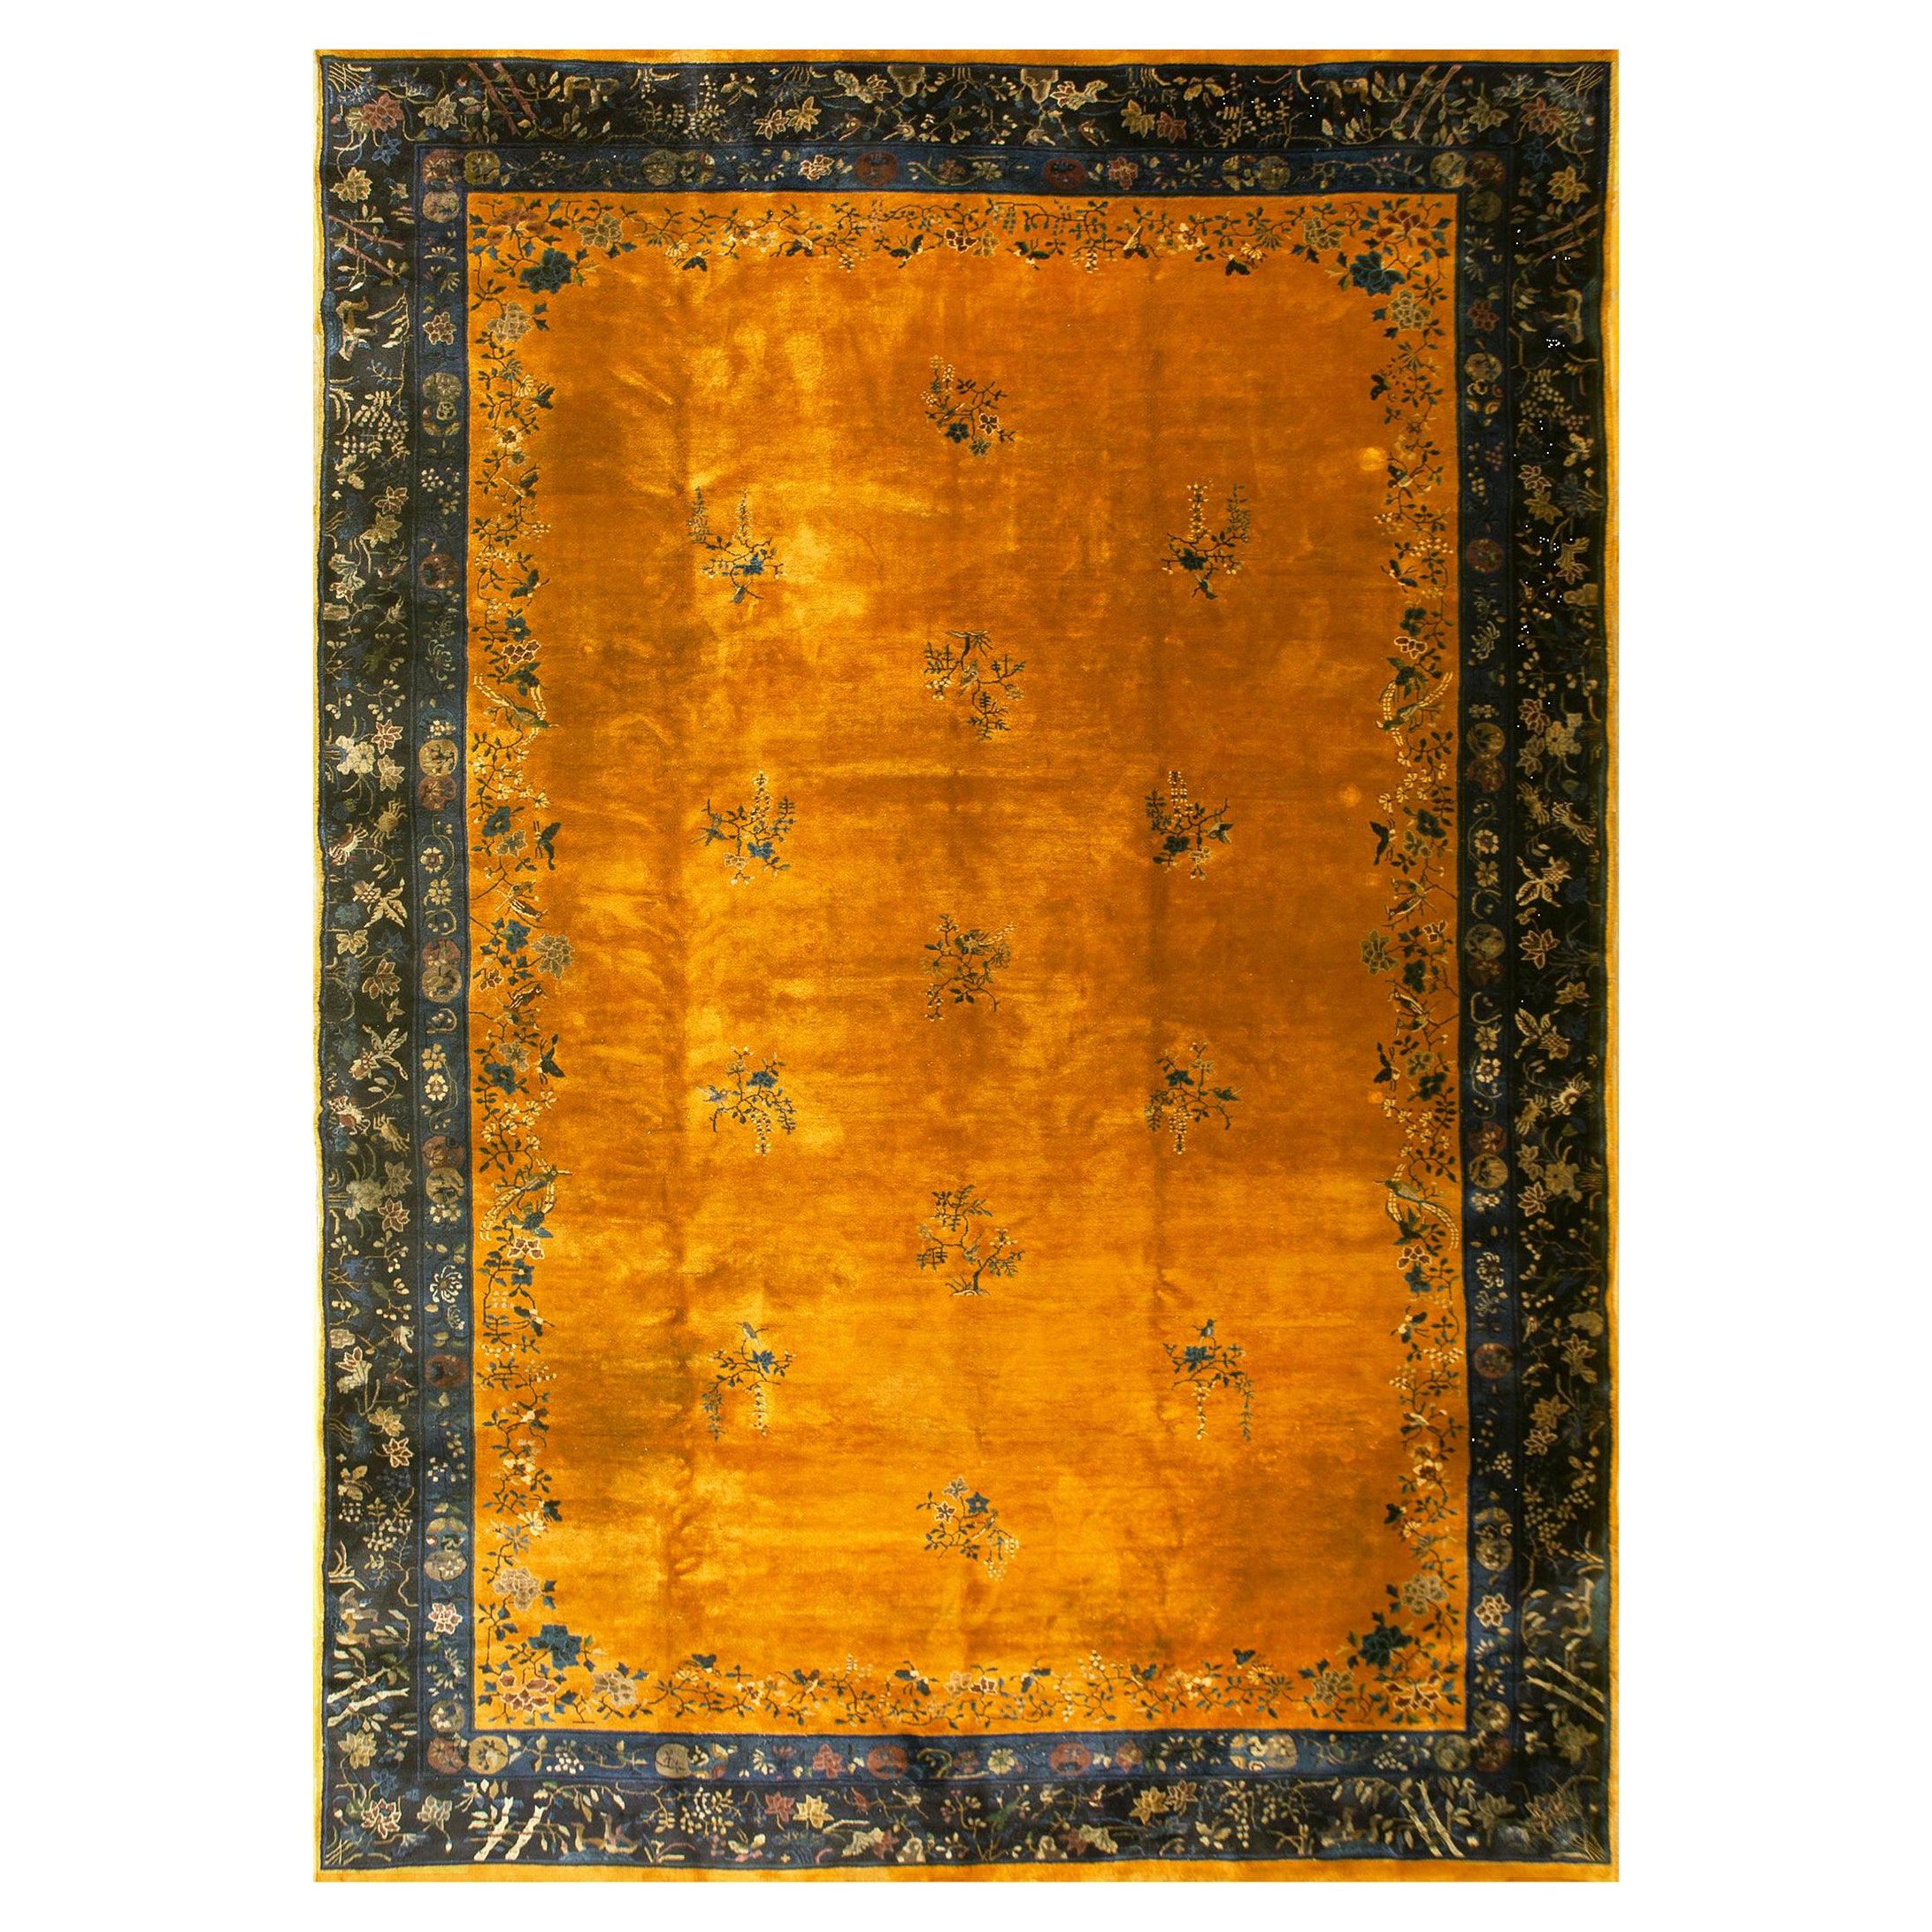 1920er Jahre Chinesischer Art Deco Teppich ( 11'8" x 16'8" - 356 x 508 )